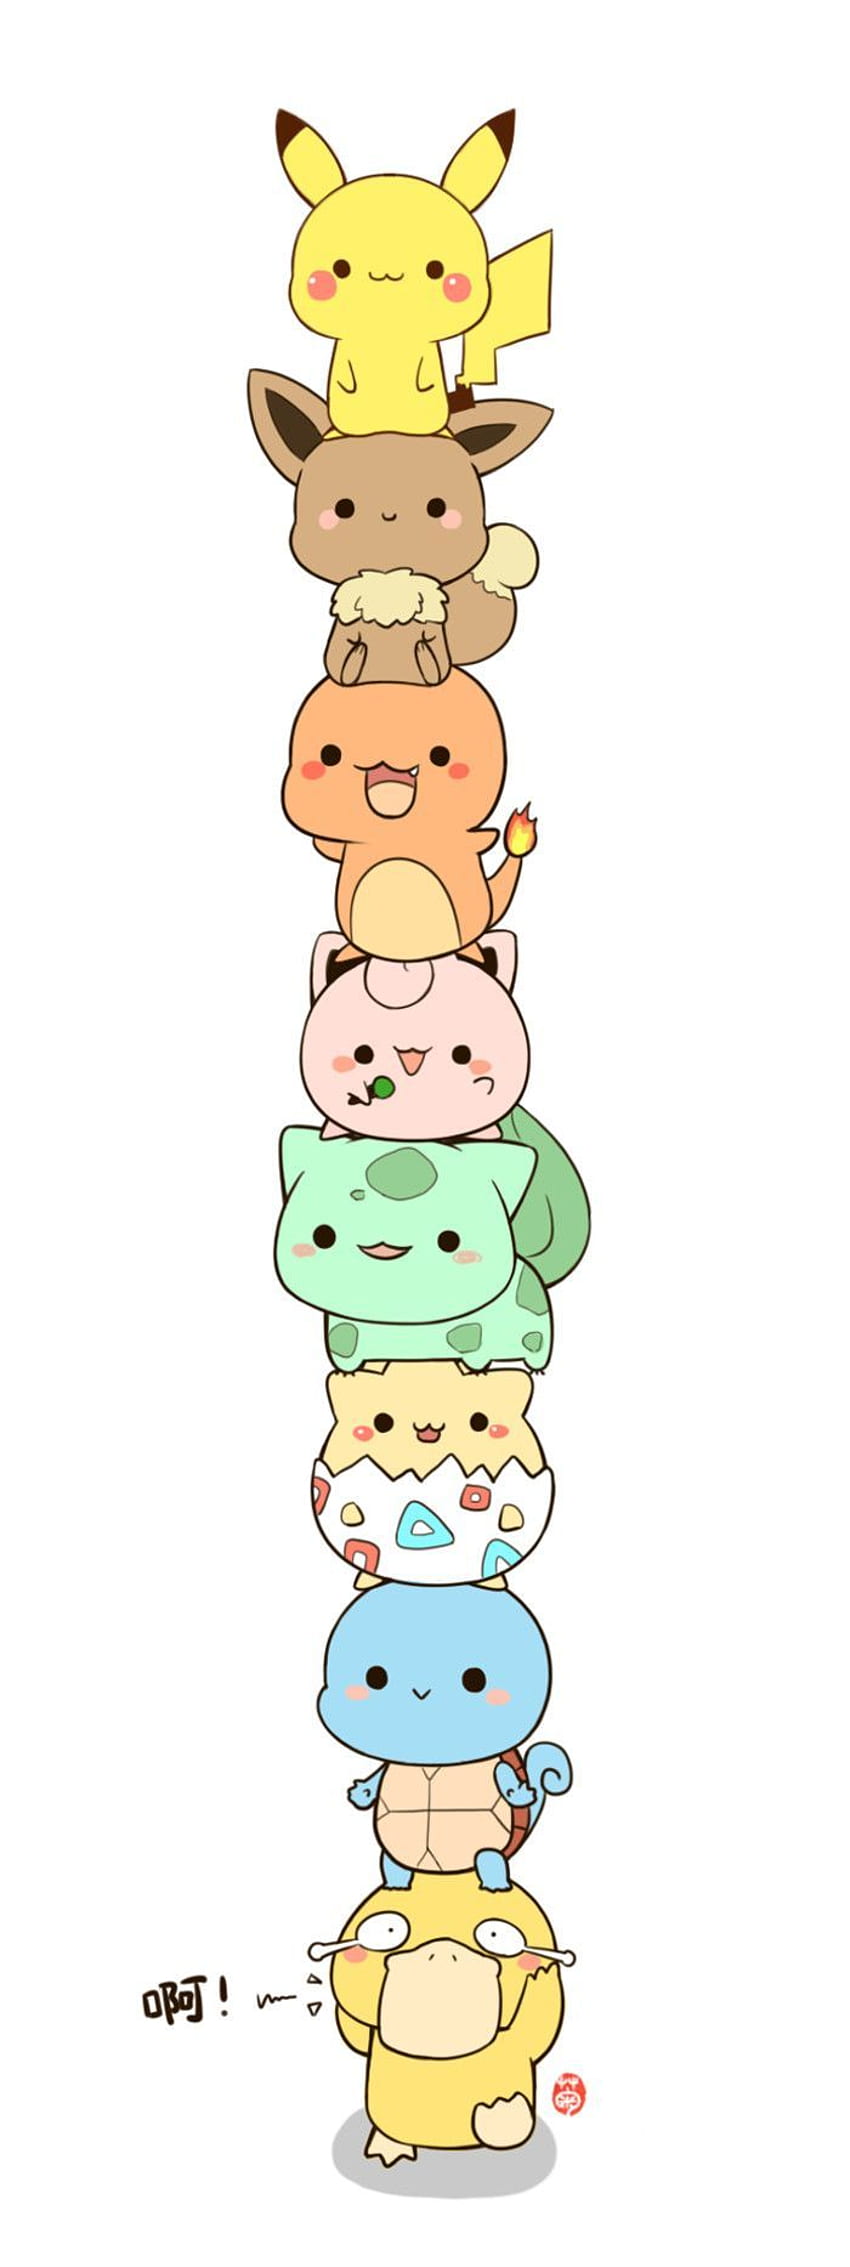 Top 99 hình ảnh chibi cute kawaii pokemon đẹp nhất hiện nay